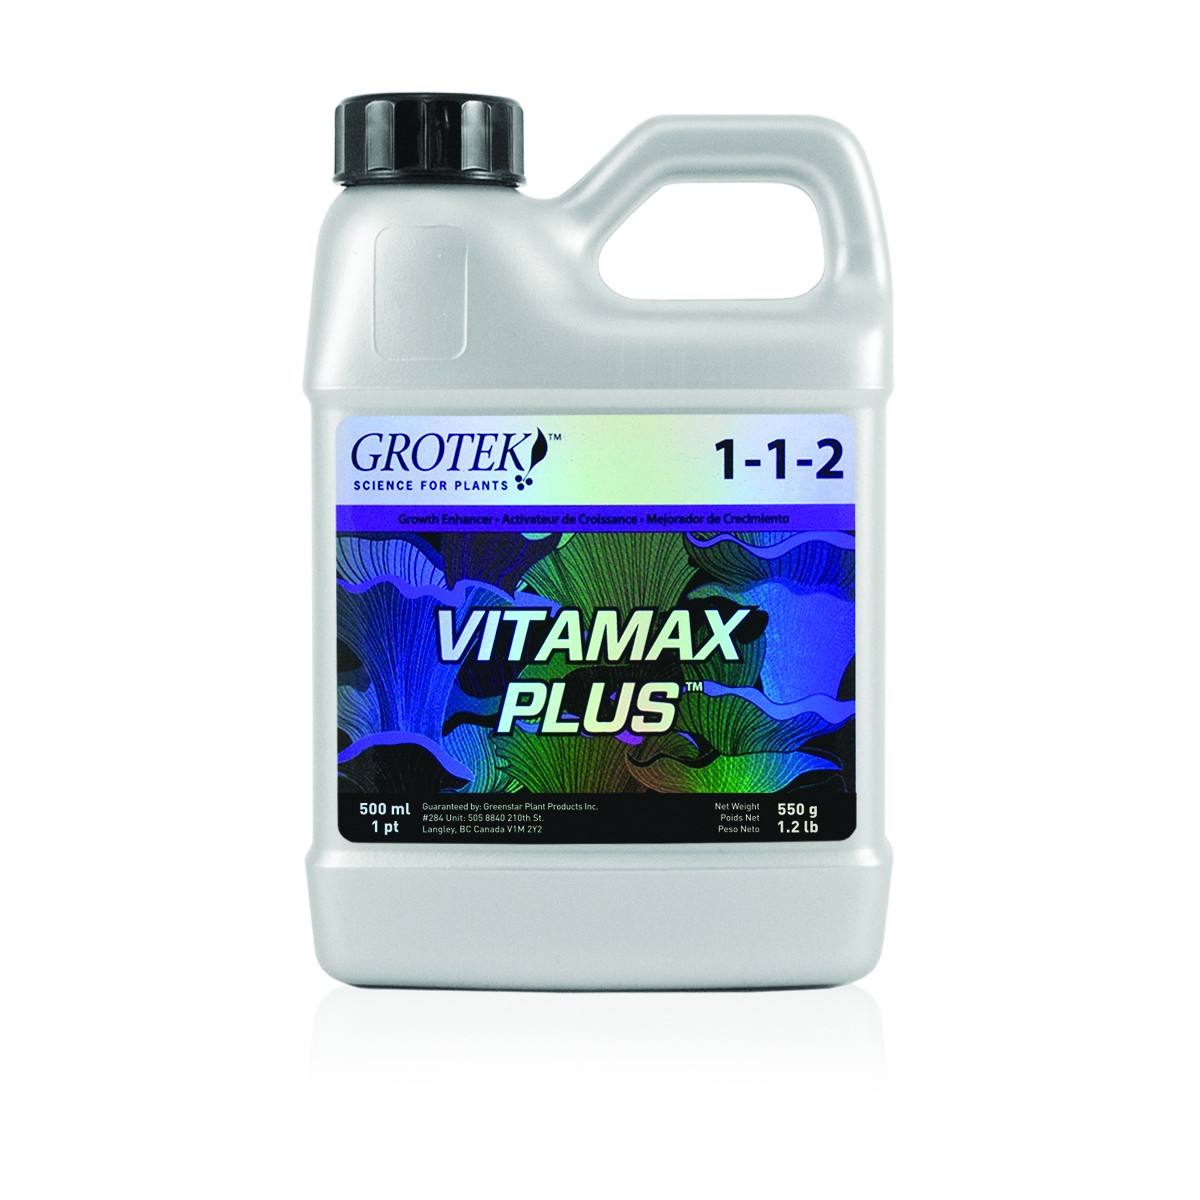 GROTEK Vitamax Plus 500ml